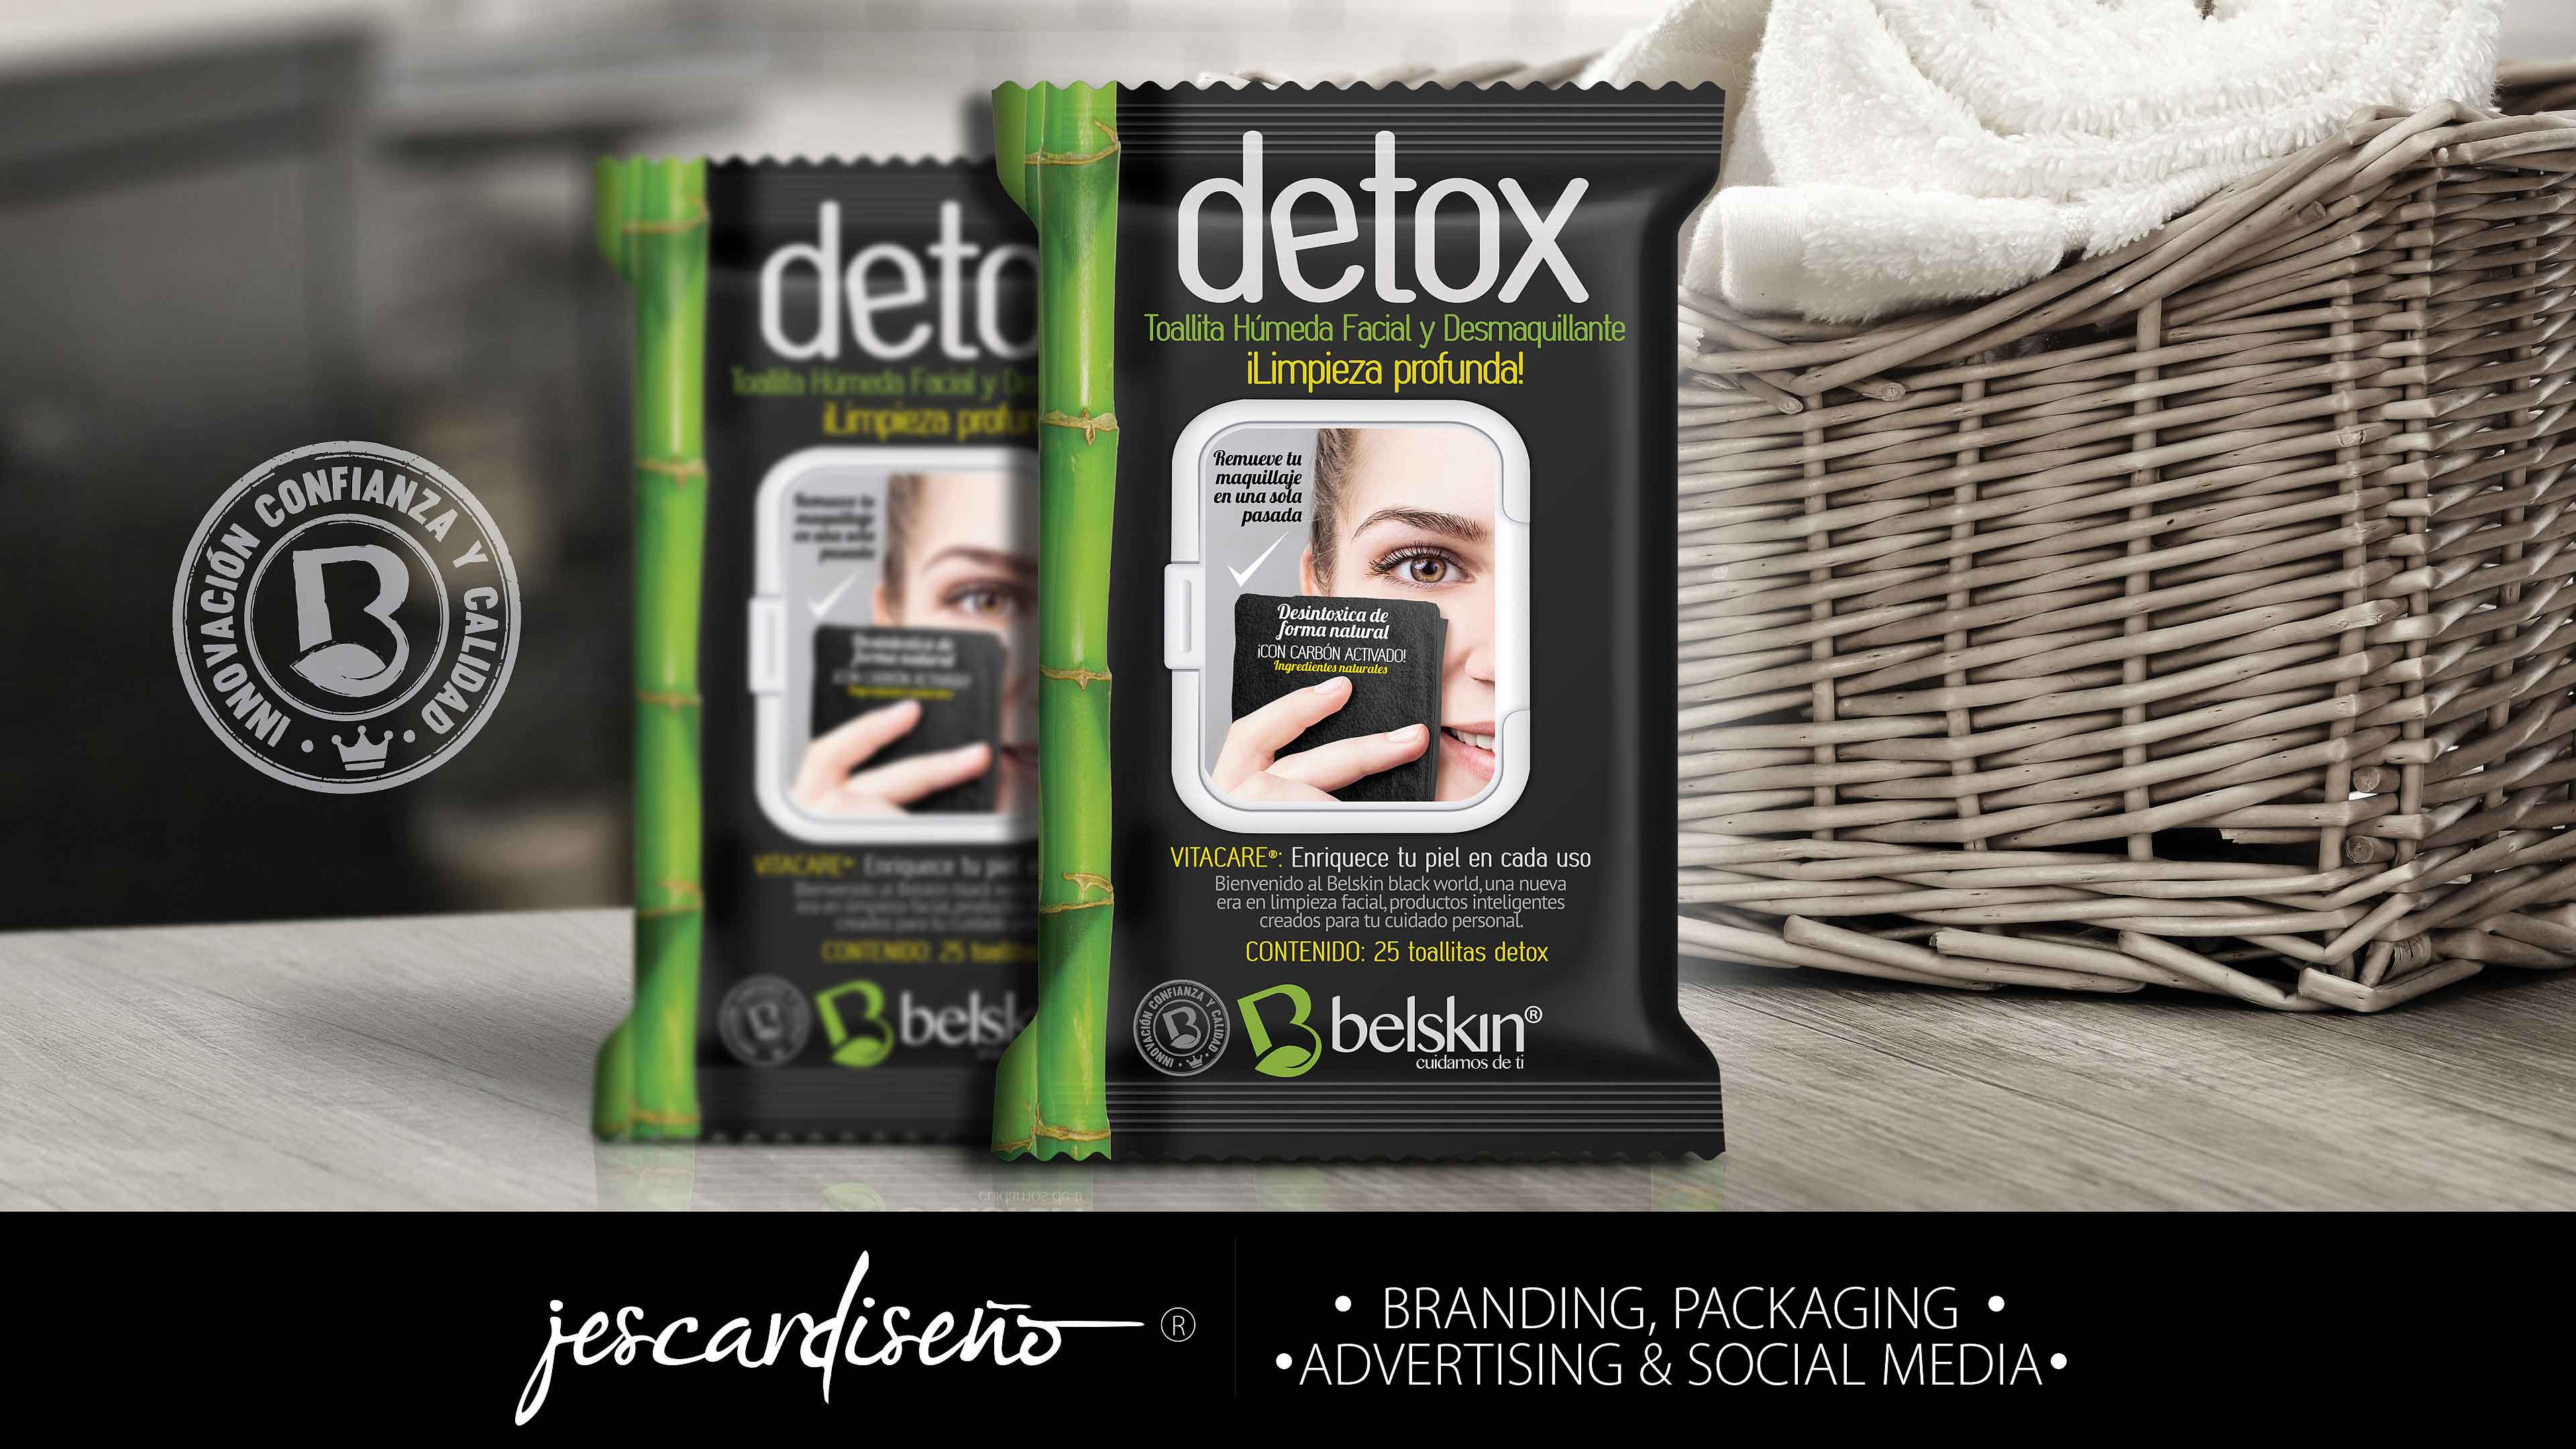 belskin detox packaging branding jescardiseno v3